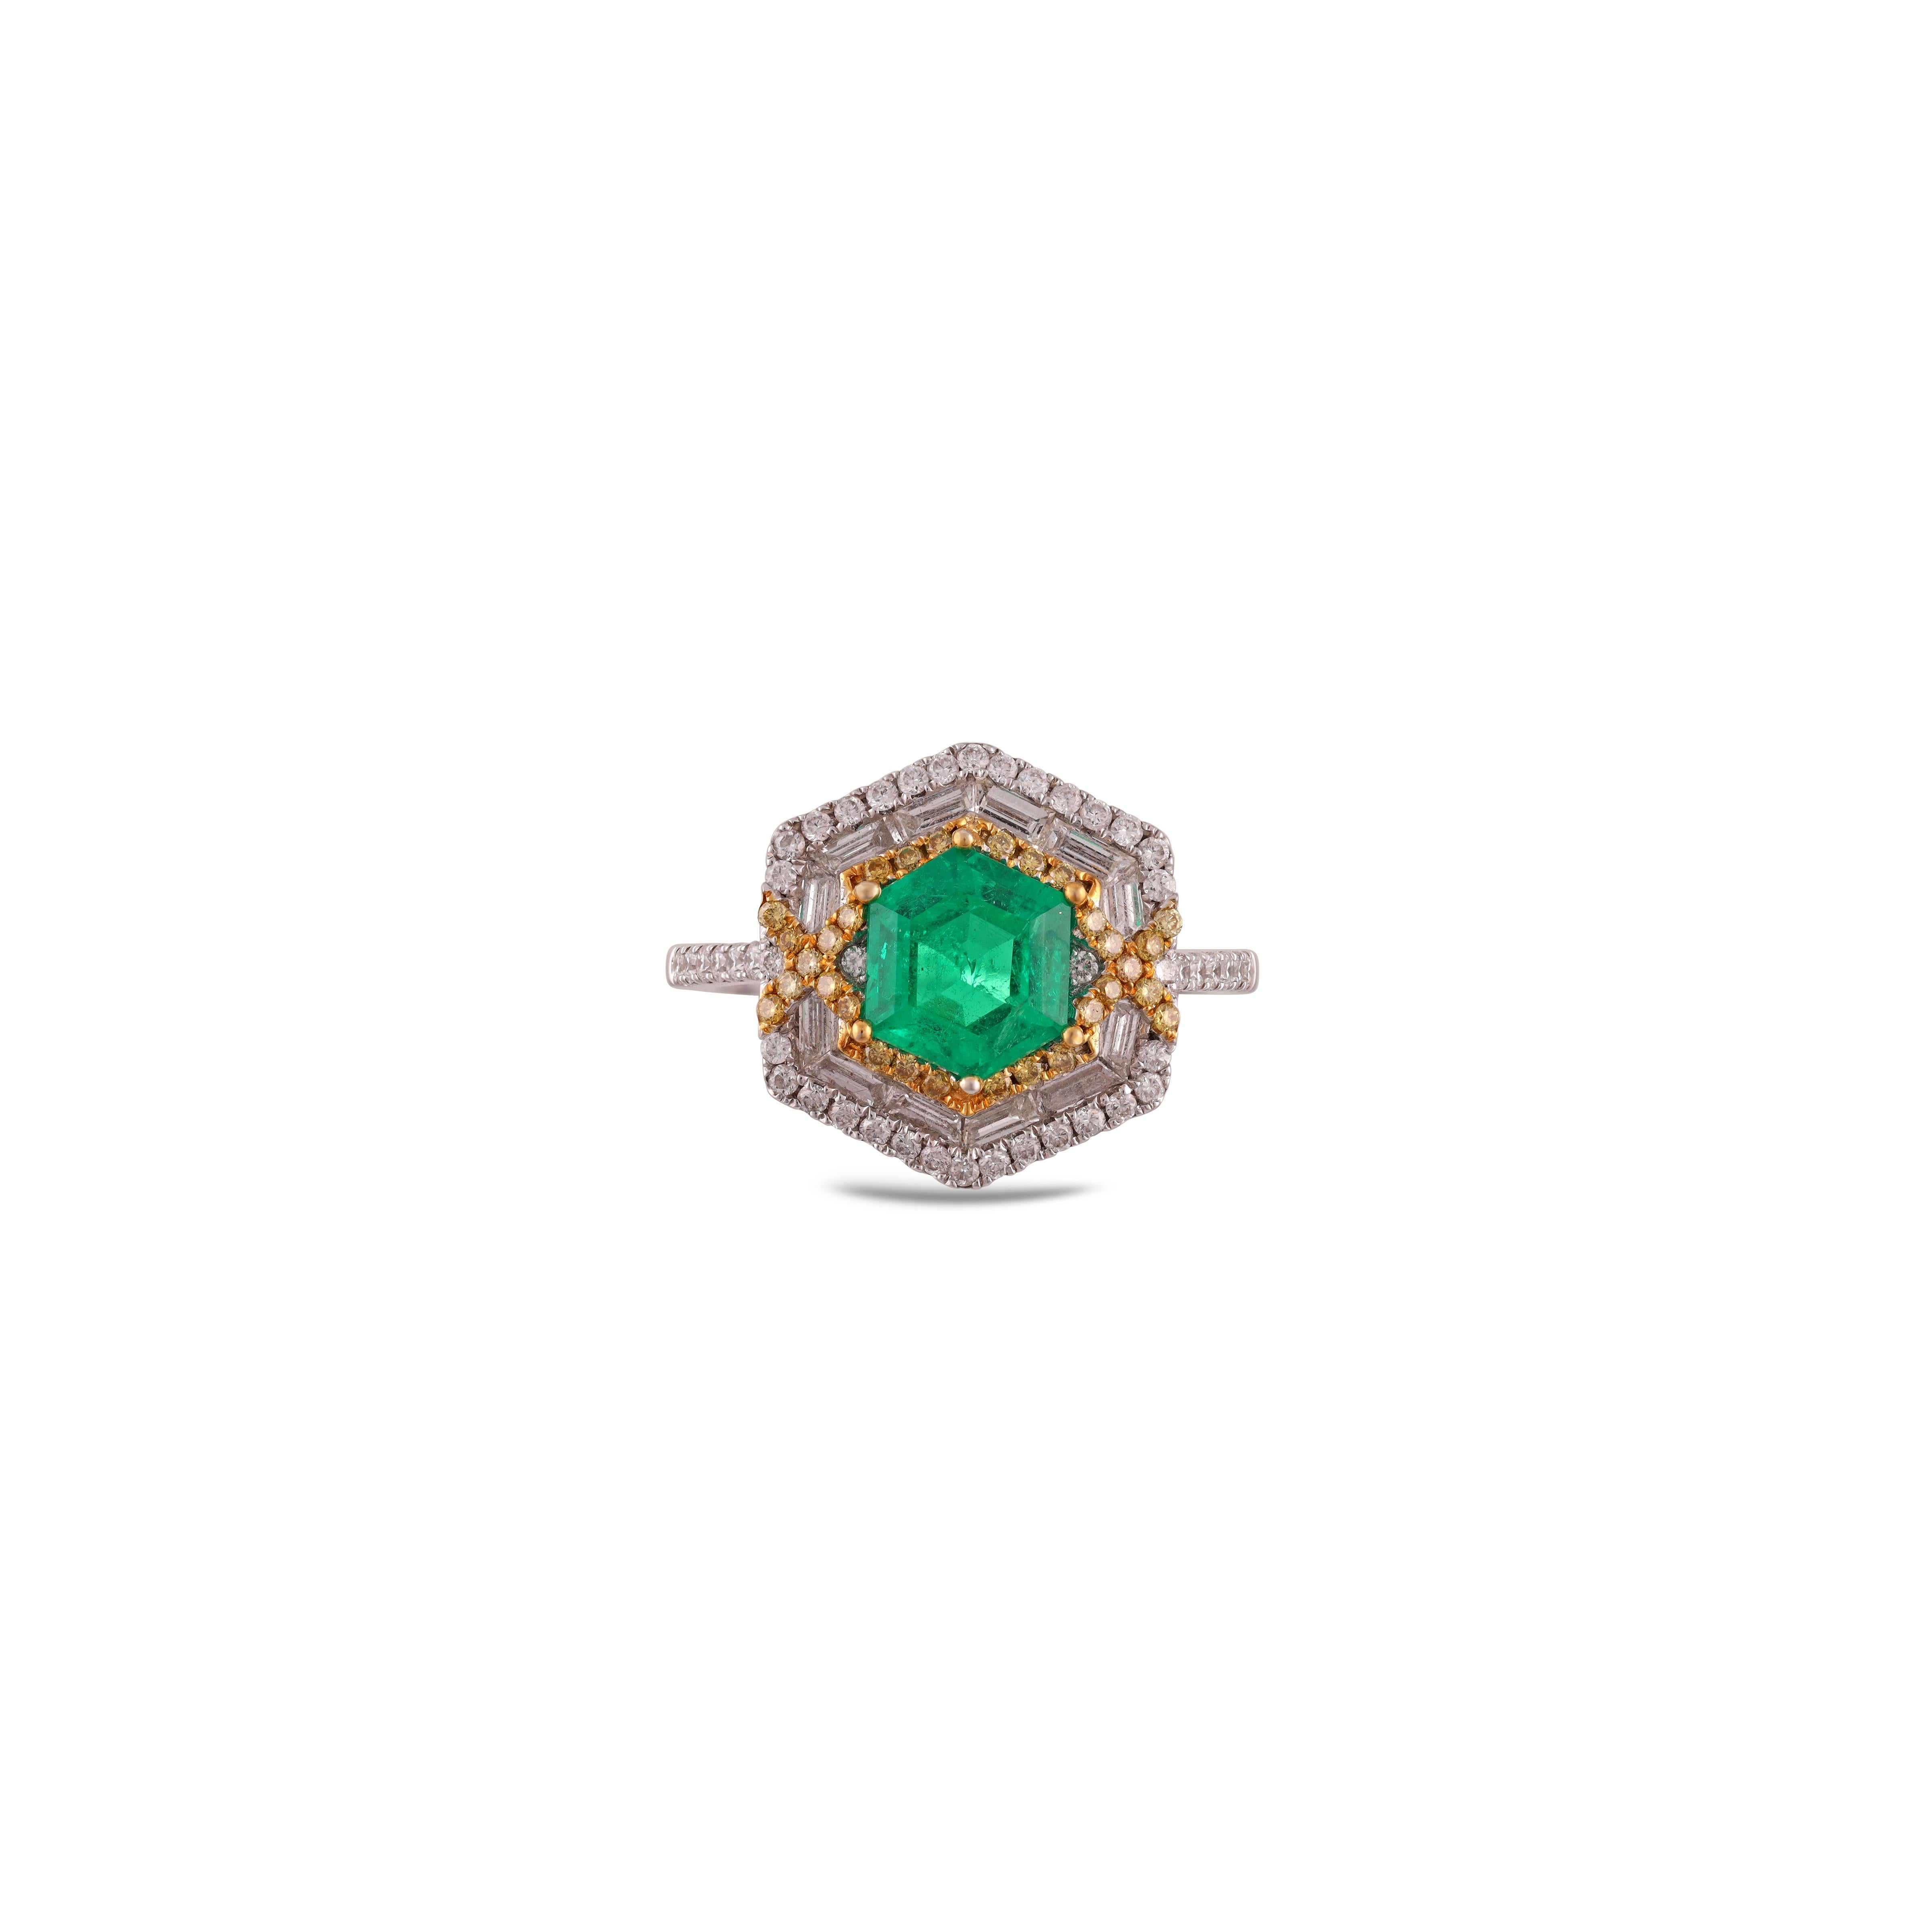 Dies ist ein eleganter Smaragd & Fancy Diamant Ring in 18k Gold mit 1 Stück von  Sambia Smaragd Gewicht 1,47 Karat, die von 90 Stück Diamanten Gewicht 0,97 Karat umgeben ist, diese ganze Ring in 18k besetzt  Gold.



 Die Ringgröße kann je nach